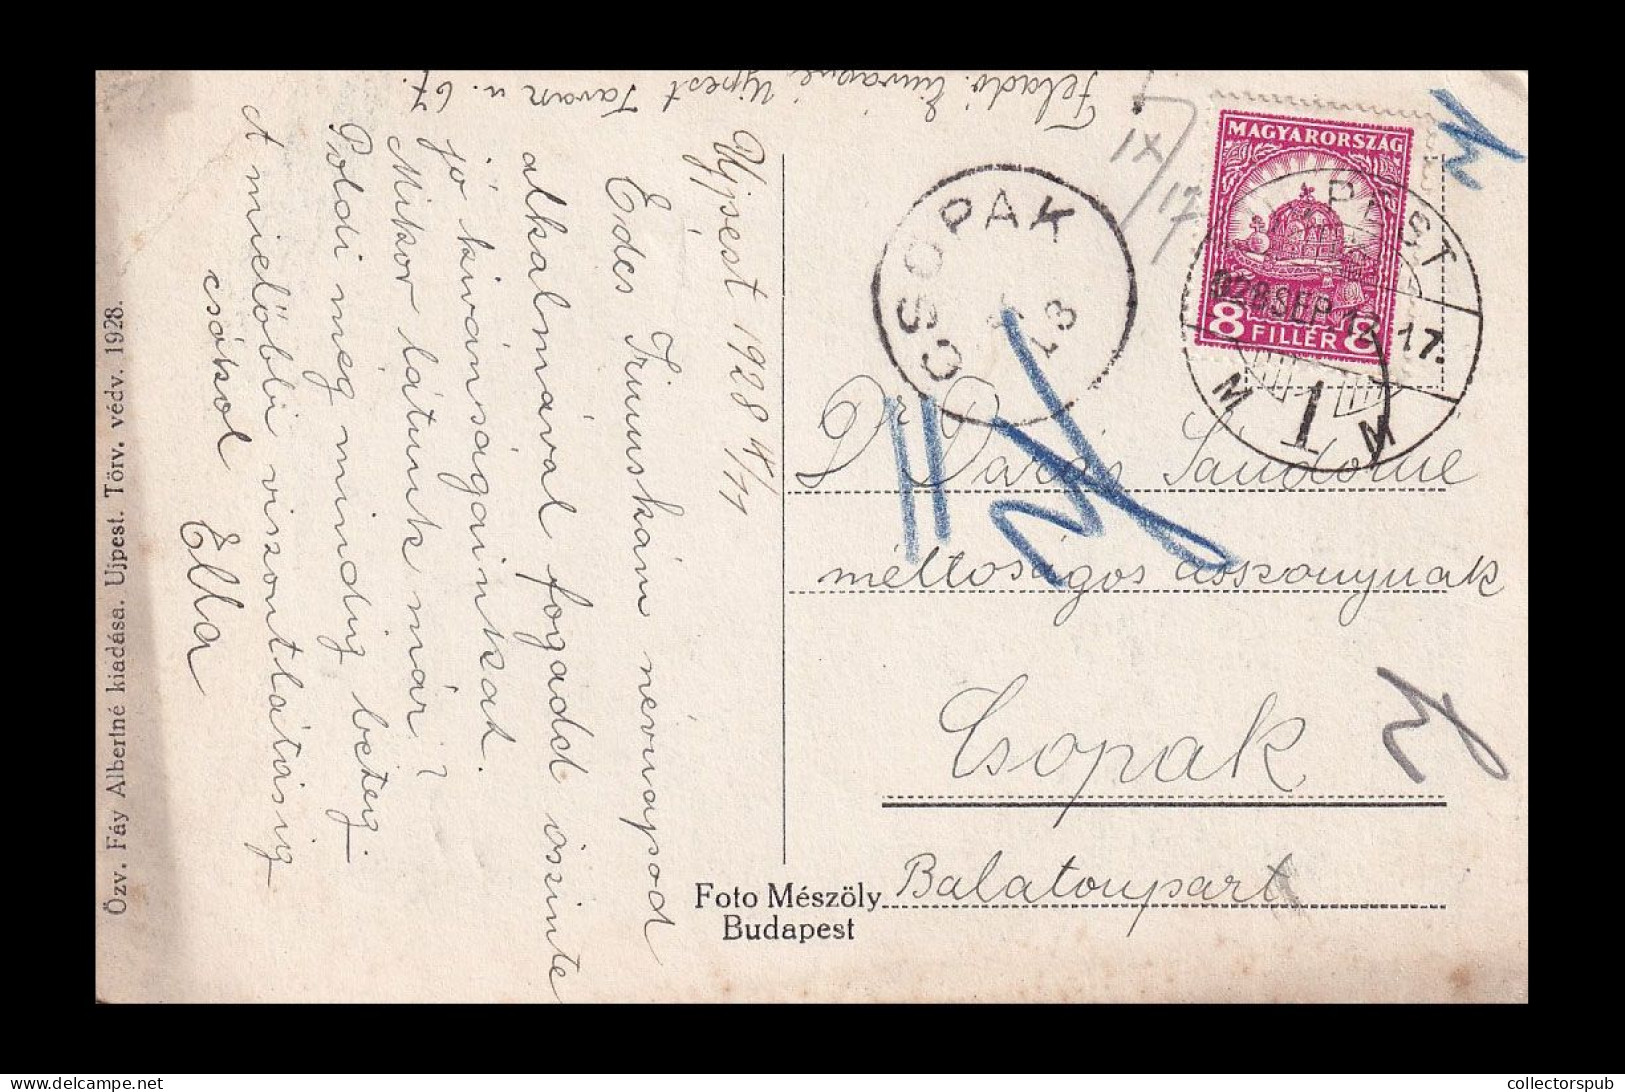 UJPEST 1928. Vintage Postcard - Hungary